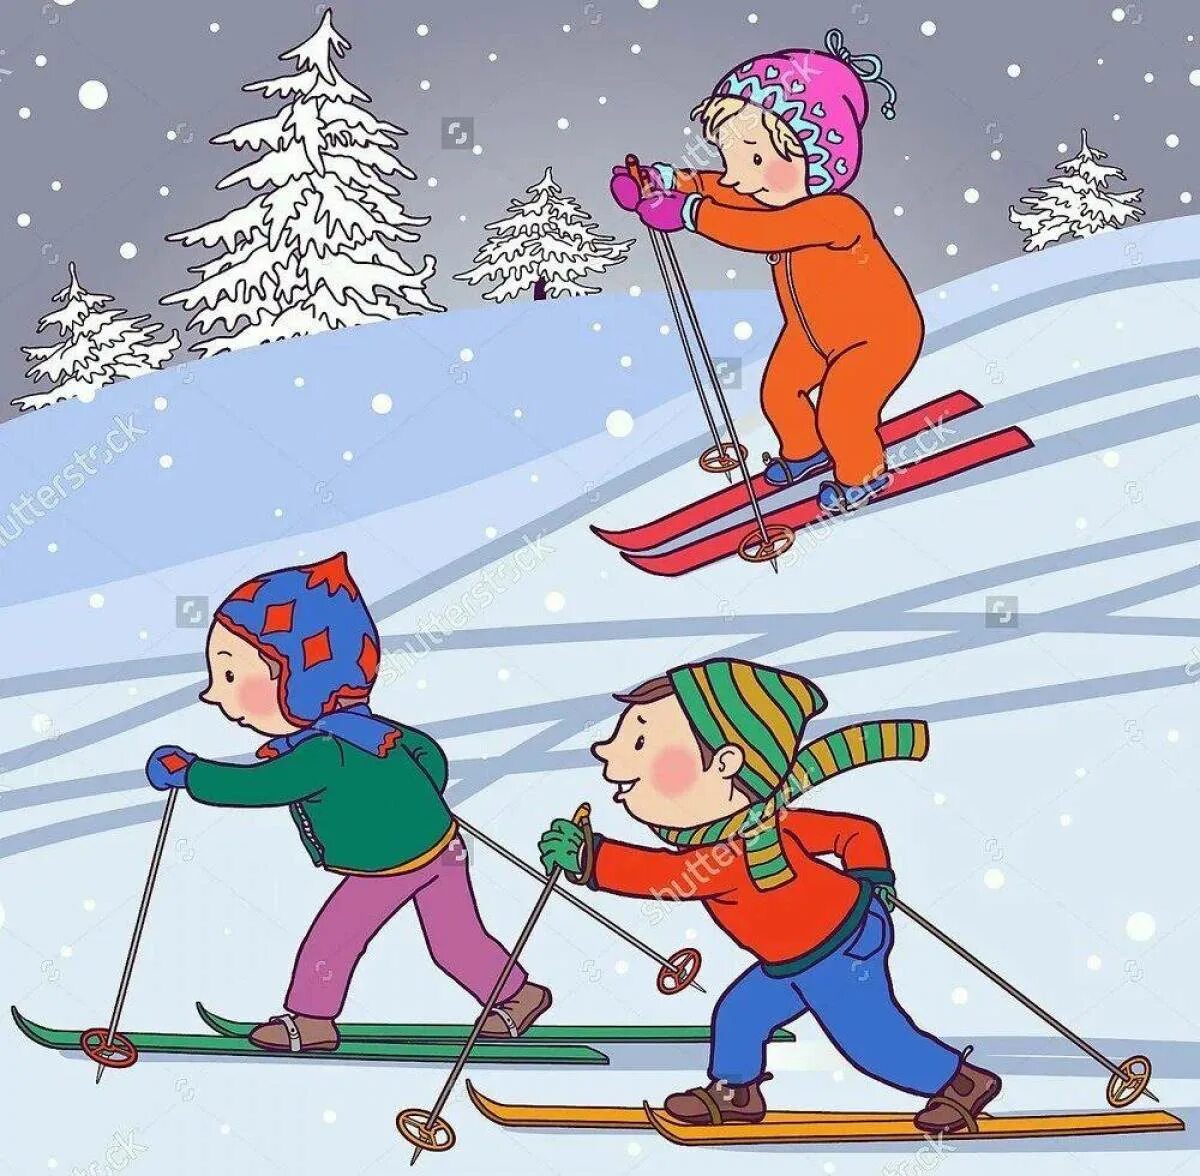 Катание на лыжах дети. Лыжный спорт дети. Кататься на лыжах. Зимний спорт для детей. Занятий зимними видами спорта